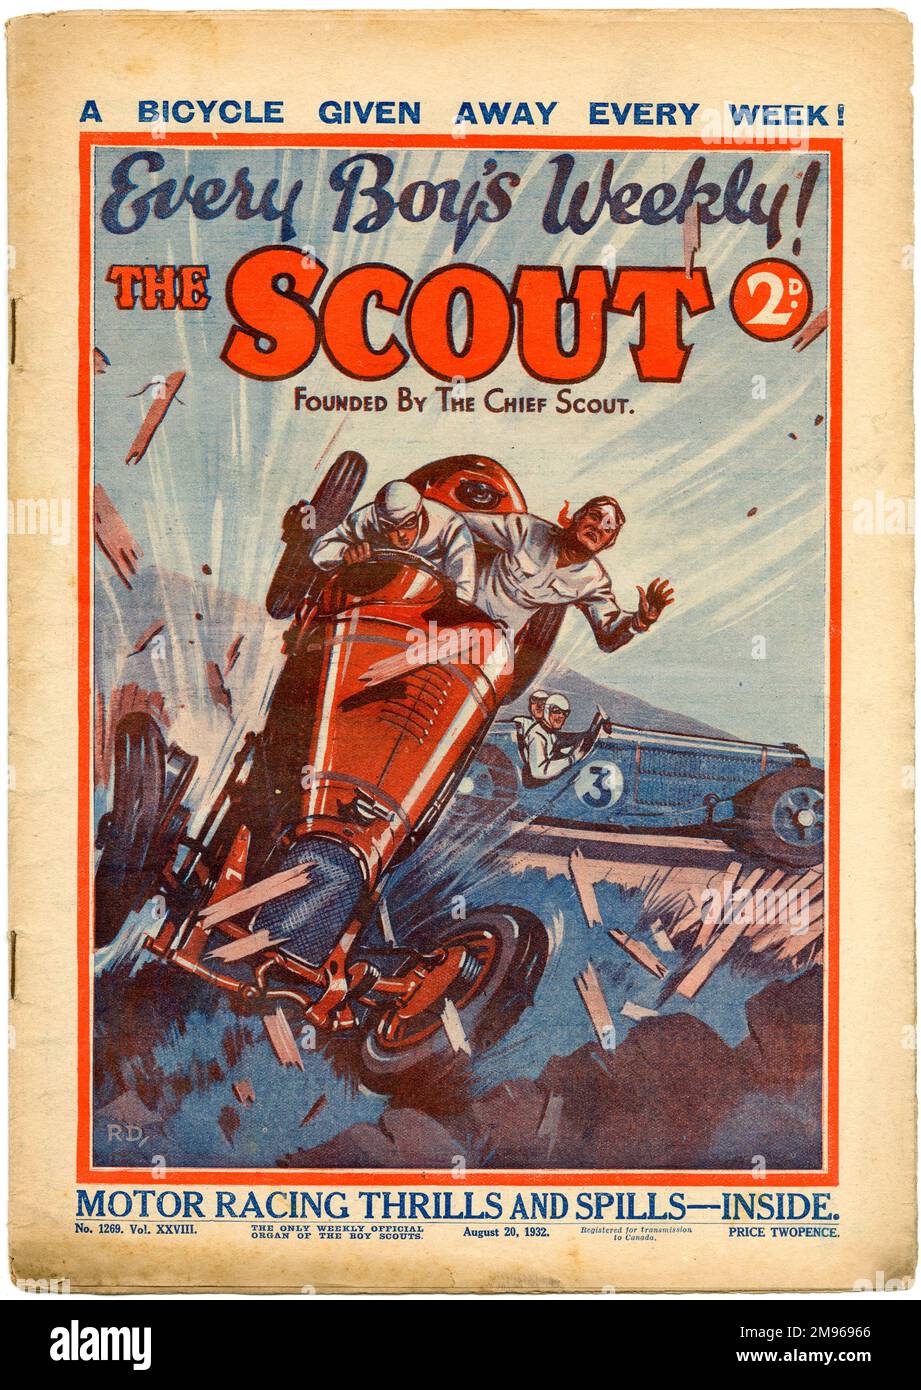 Titelseite des Scout Magazins mit einem ziemlich katastrophalen Motorradrennen, mit mehr „Motorrennen-Nervenkitzel und Spills“, die im Inneren versprochen wurden. Stockfoto